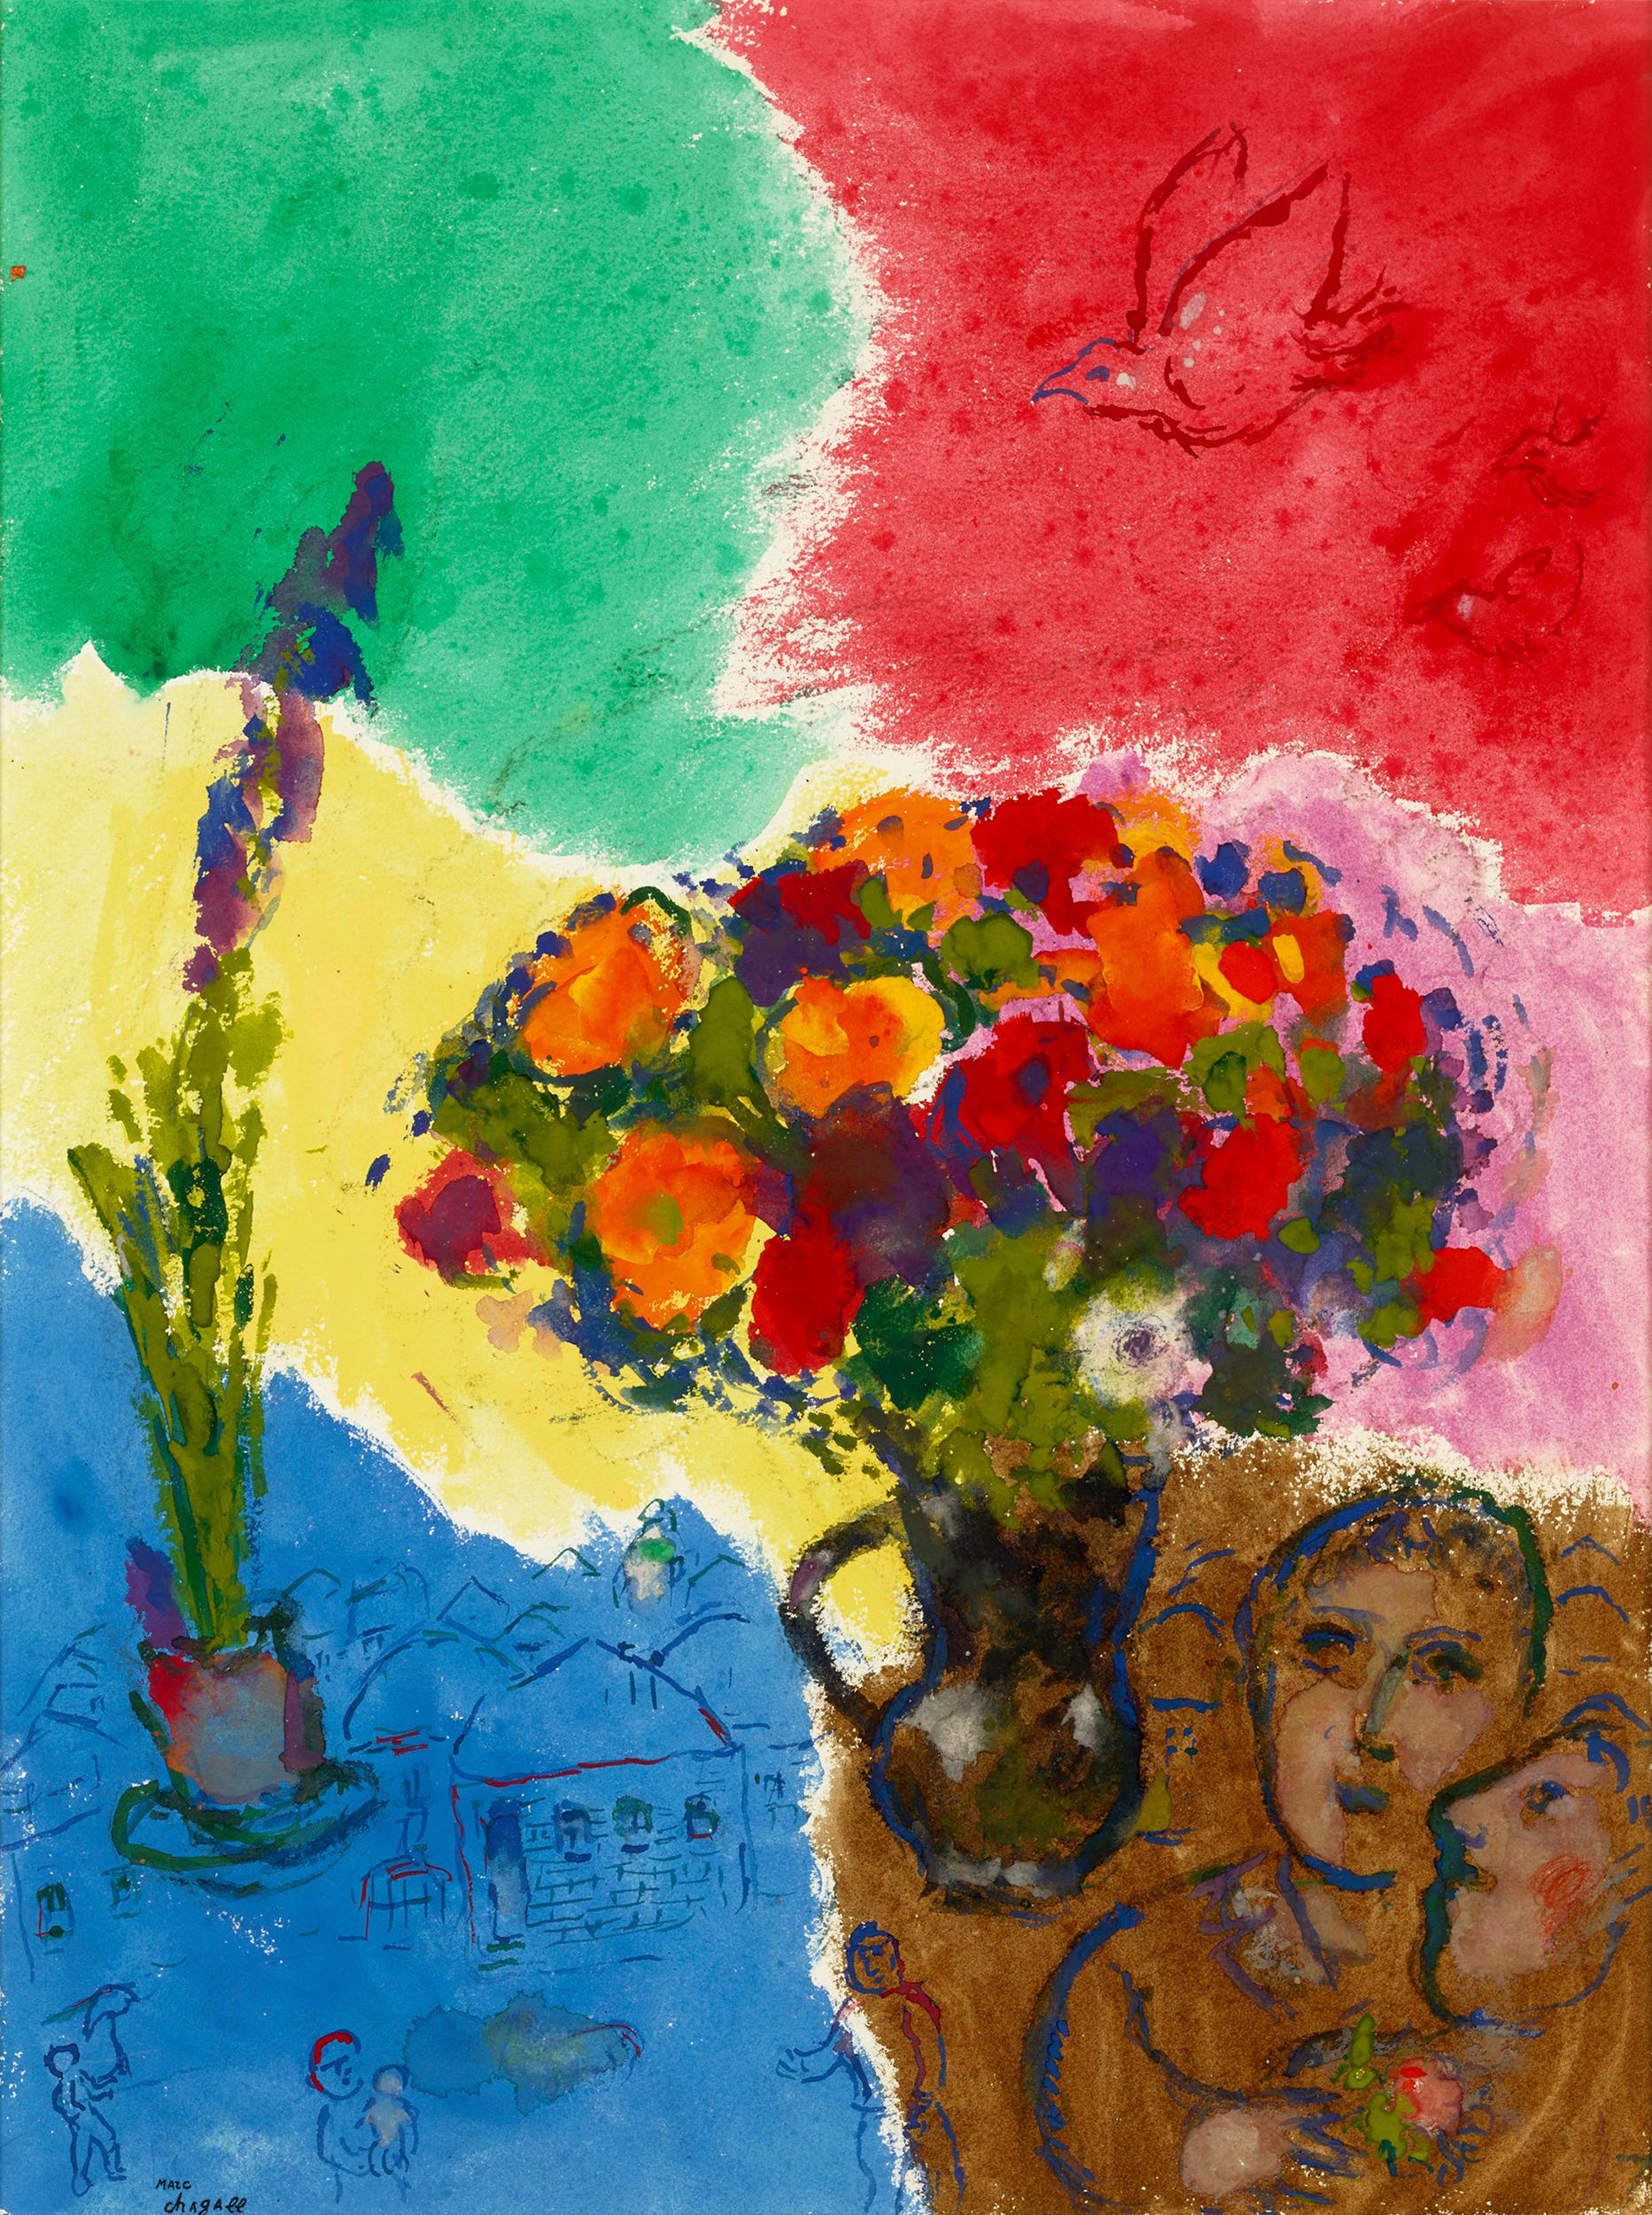 Marc Chagall
1887-1985  Russisch

Die Blumen der Verliebten auf mehrfarbigem Grund
(Blumen der Liebenden auf mehrfarbigem Hintergrund)

Gestempelt mit der Signatur "Marc Chagall" (unten links)
Gouache, Tempera und lithografischer Bleistift auf